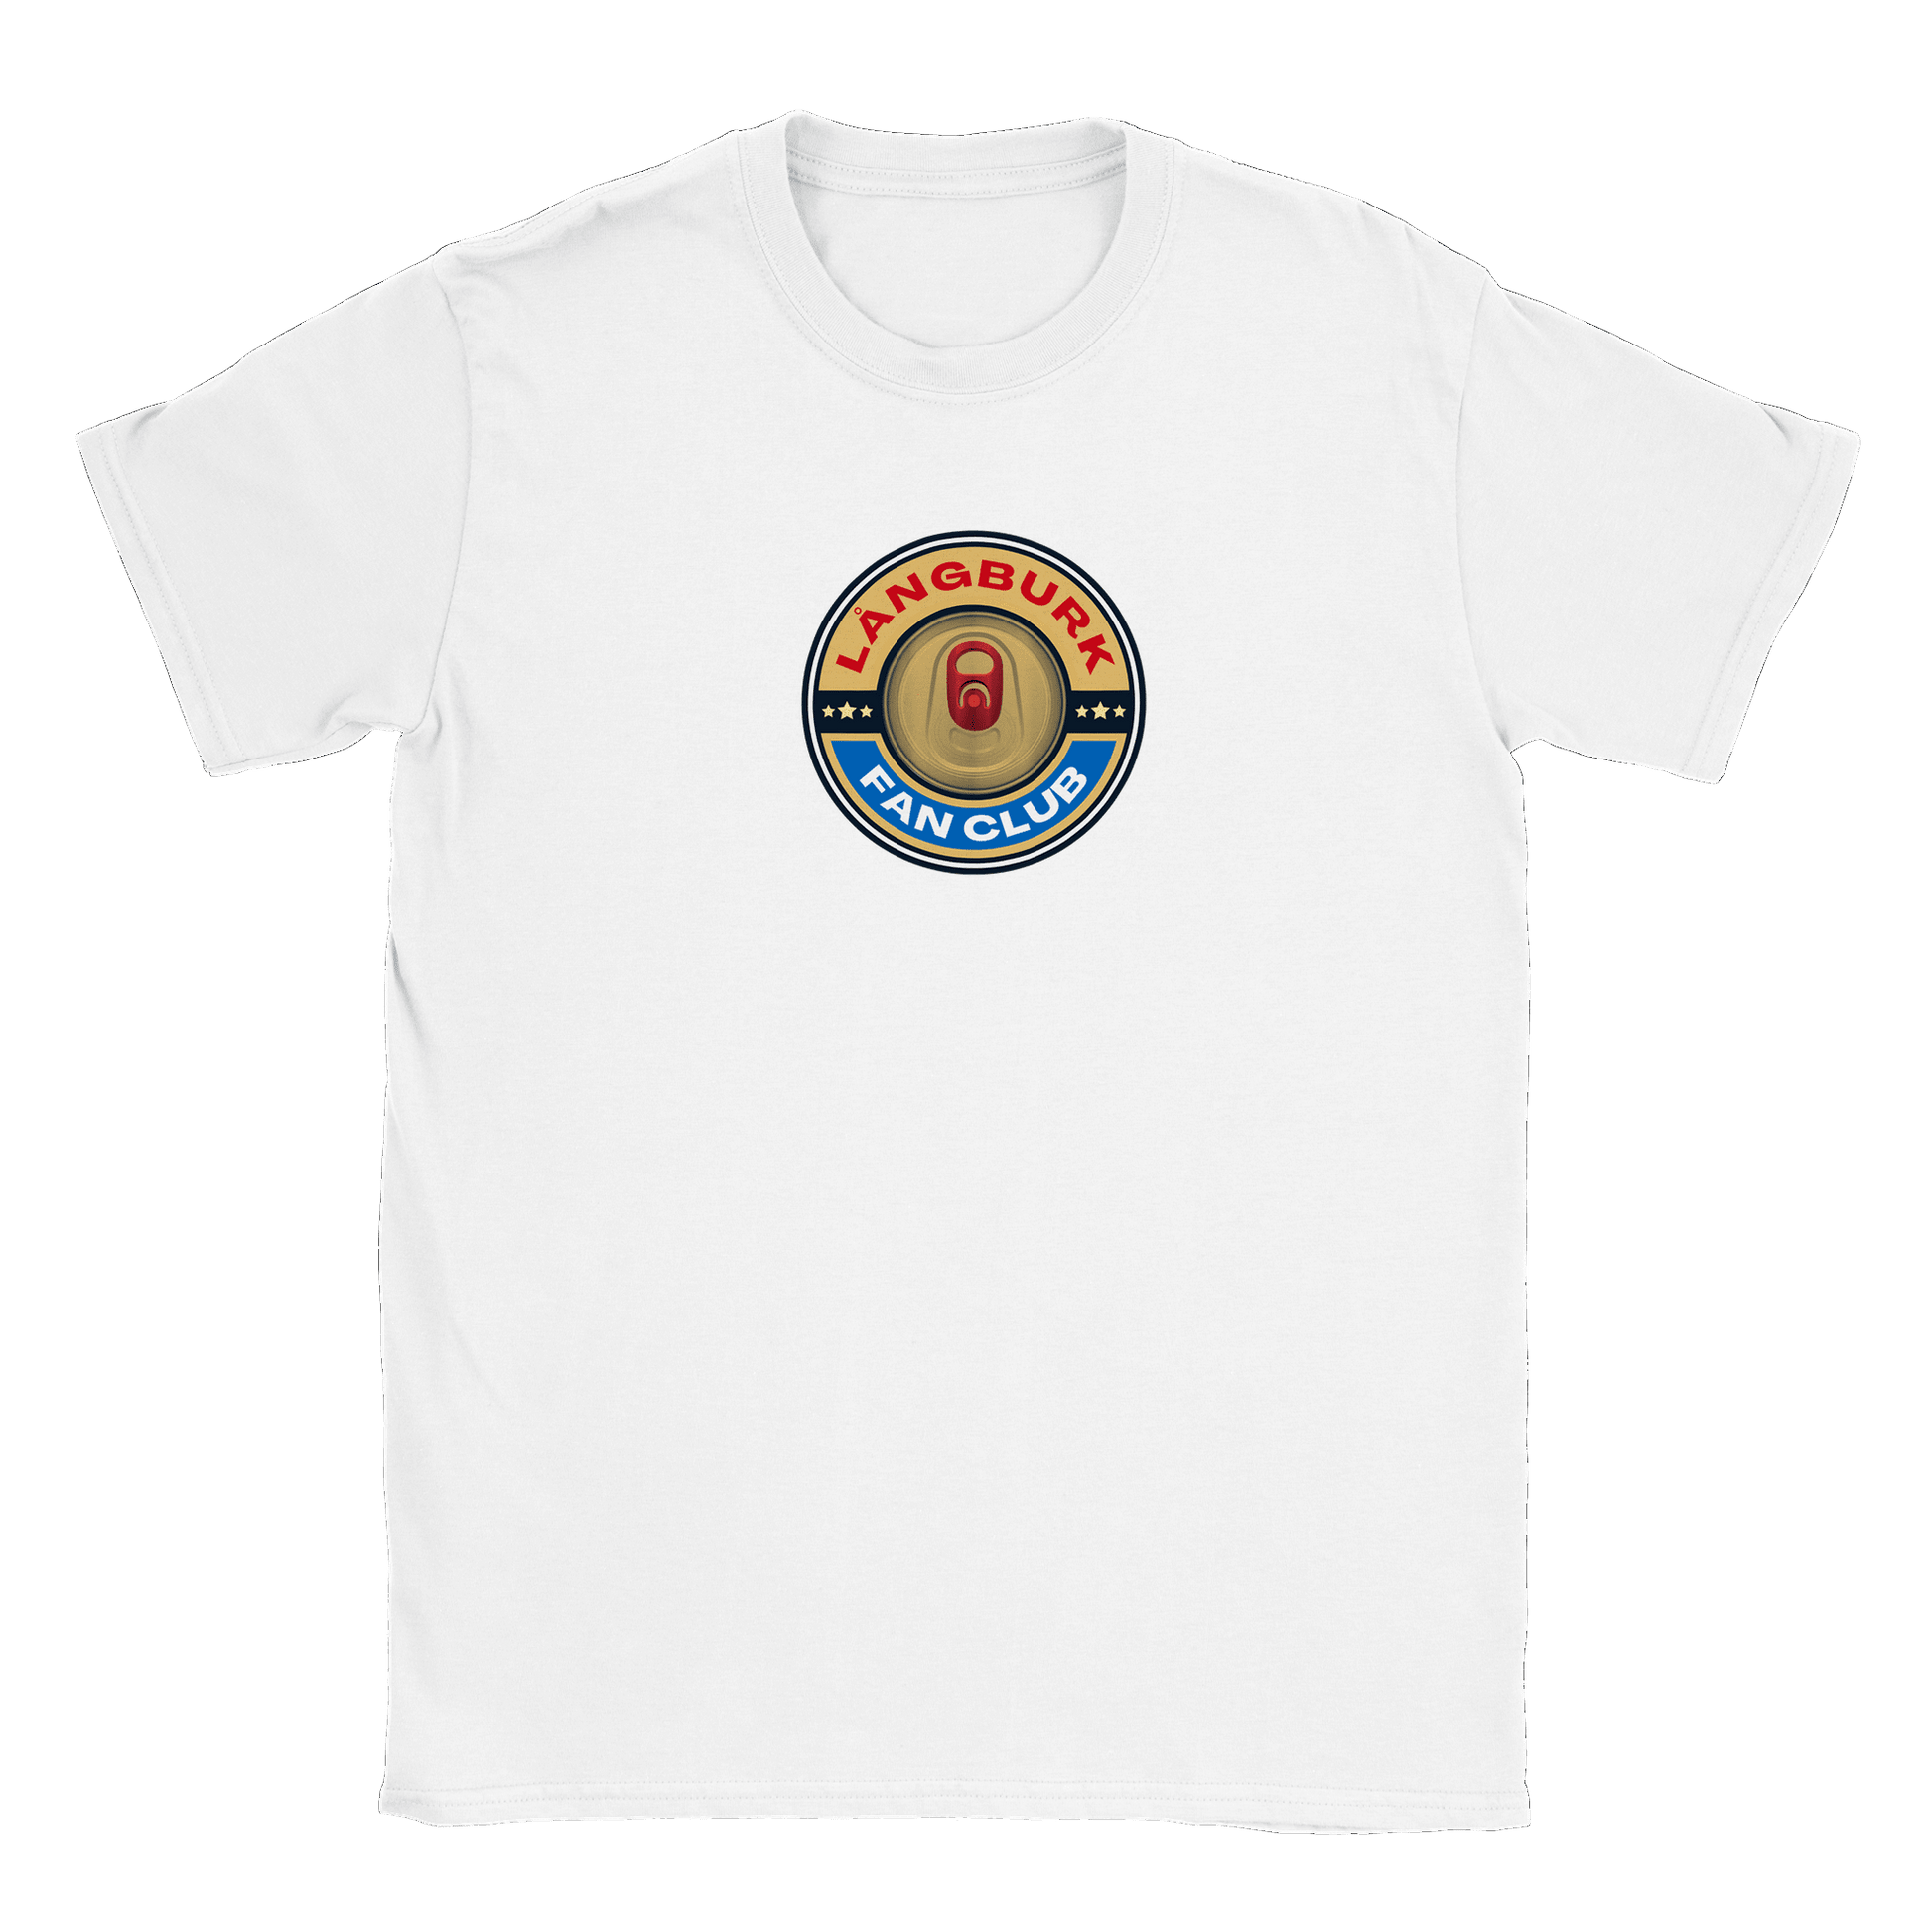 Långburk Fan Club Norrland Edition - T-shirt Vit